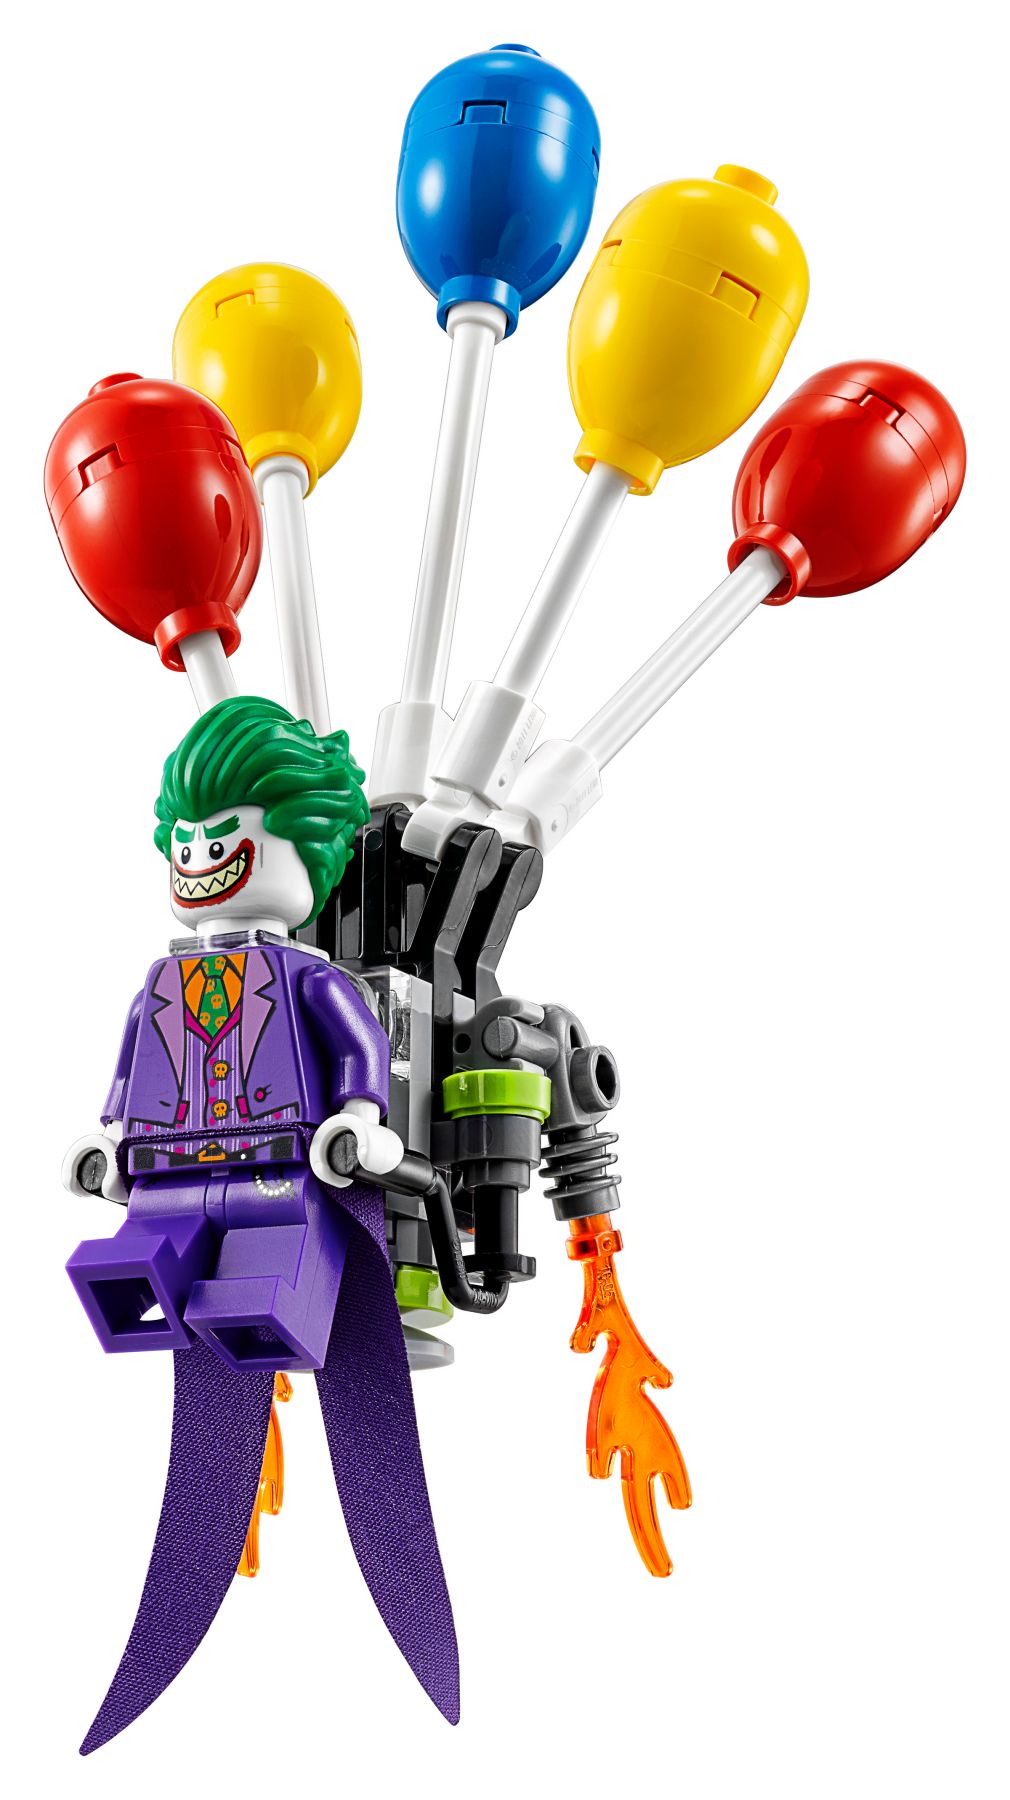 LEGO The LEGO Batman Movie 70900 Jokers Flucht mit den Ballons LEGO_70900_alt2.jpg